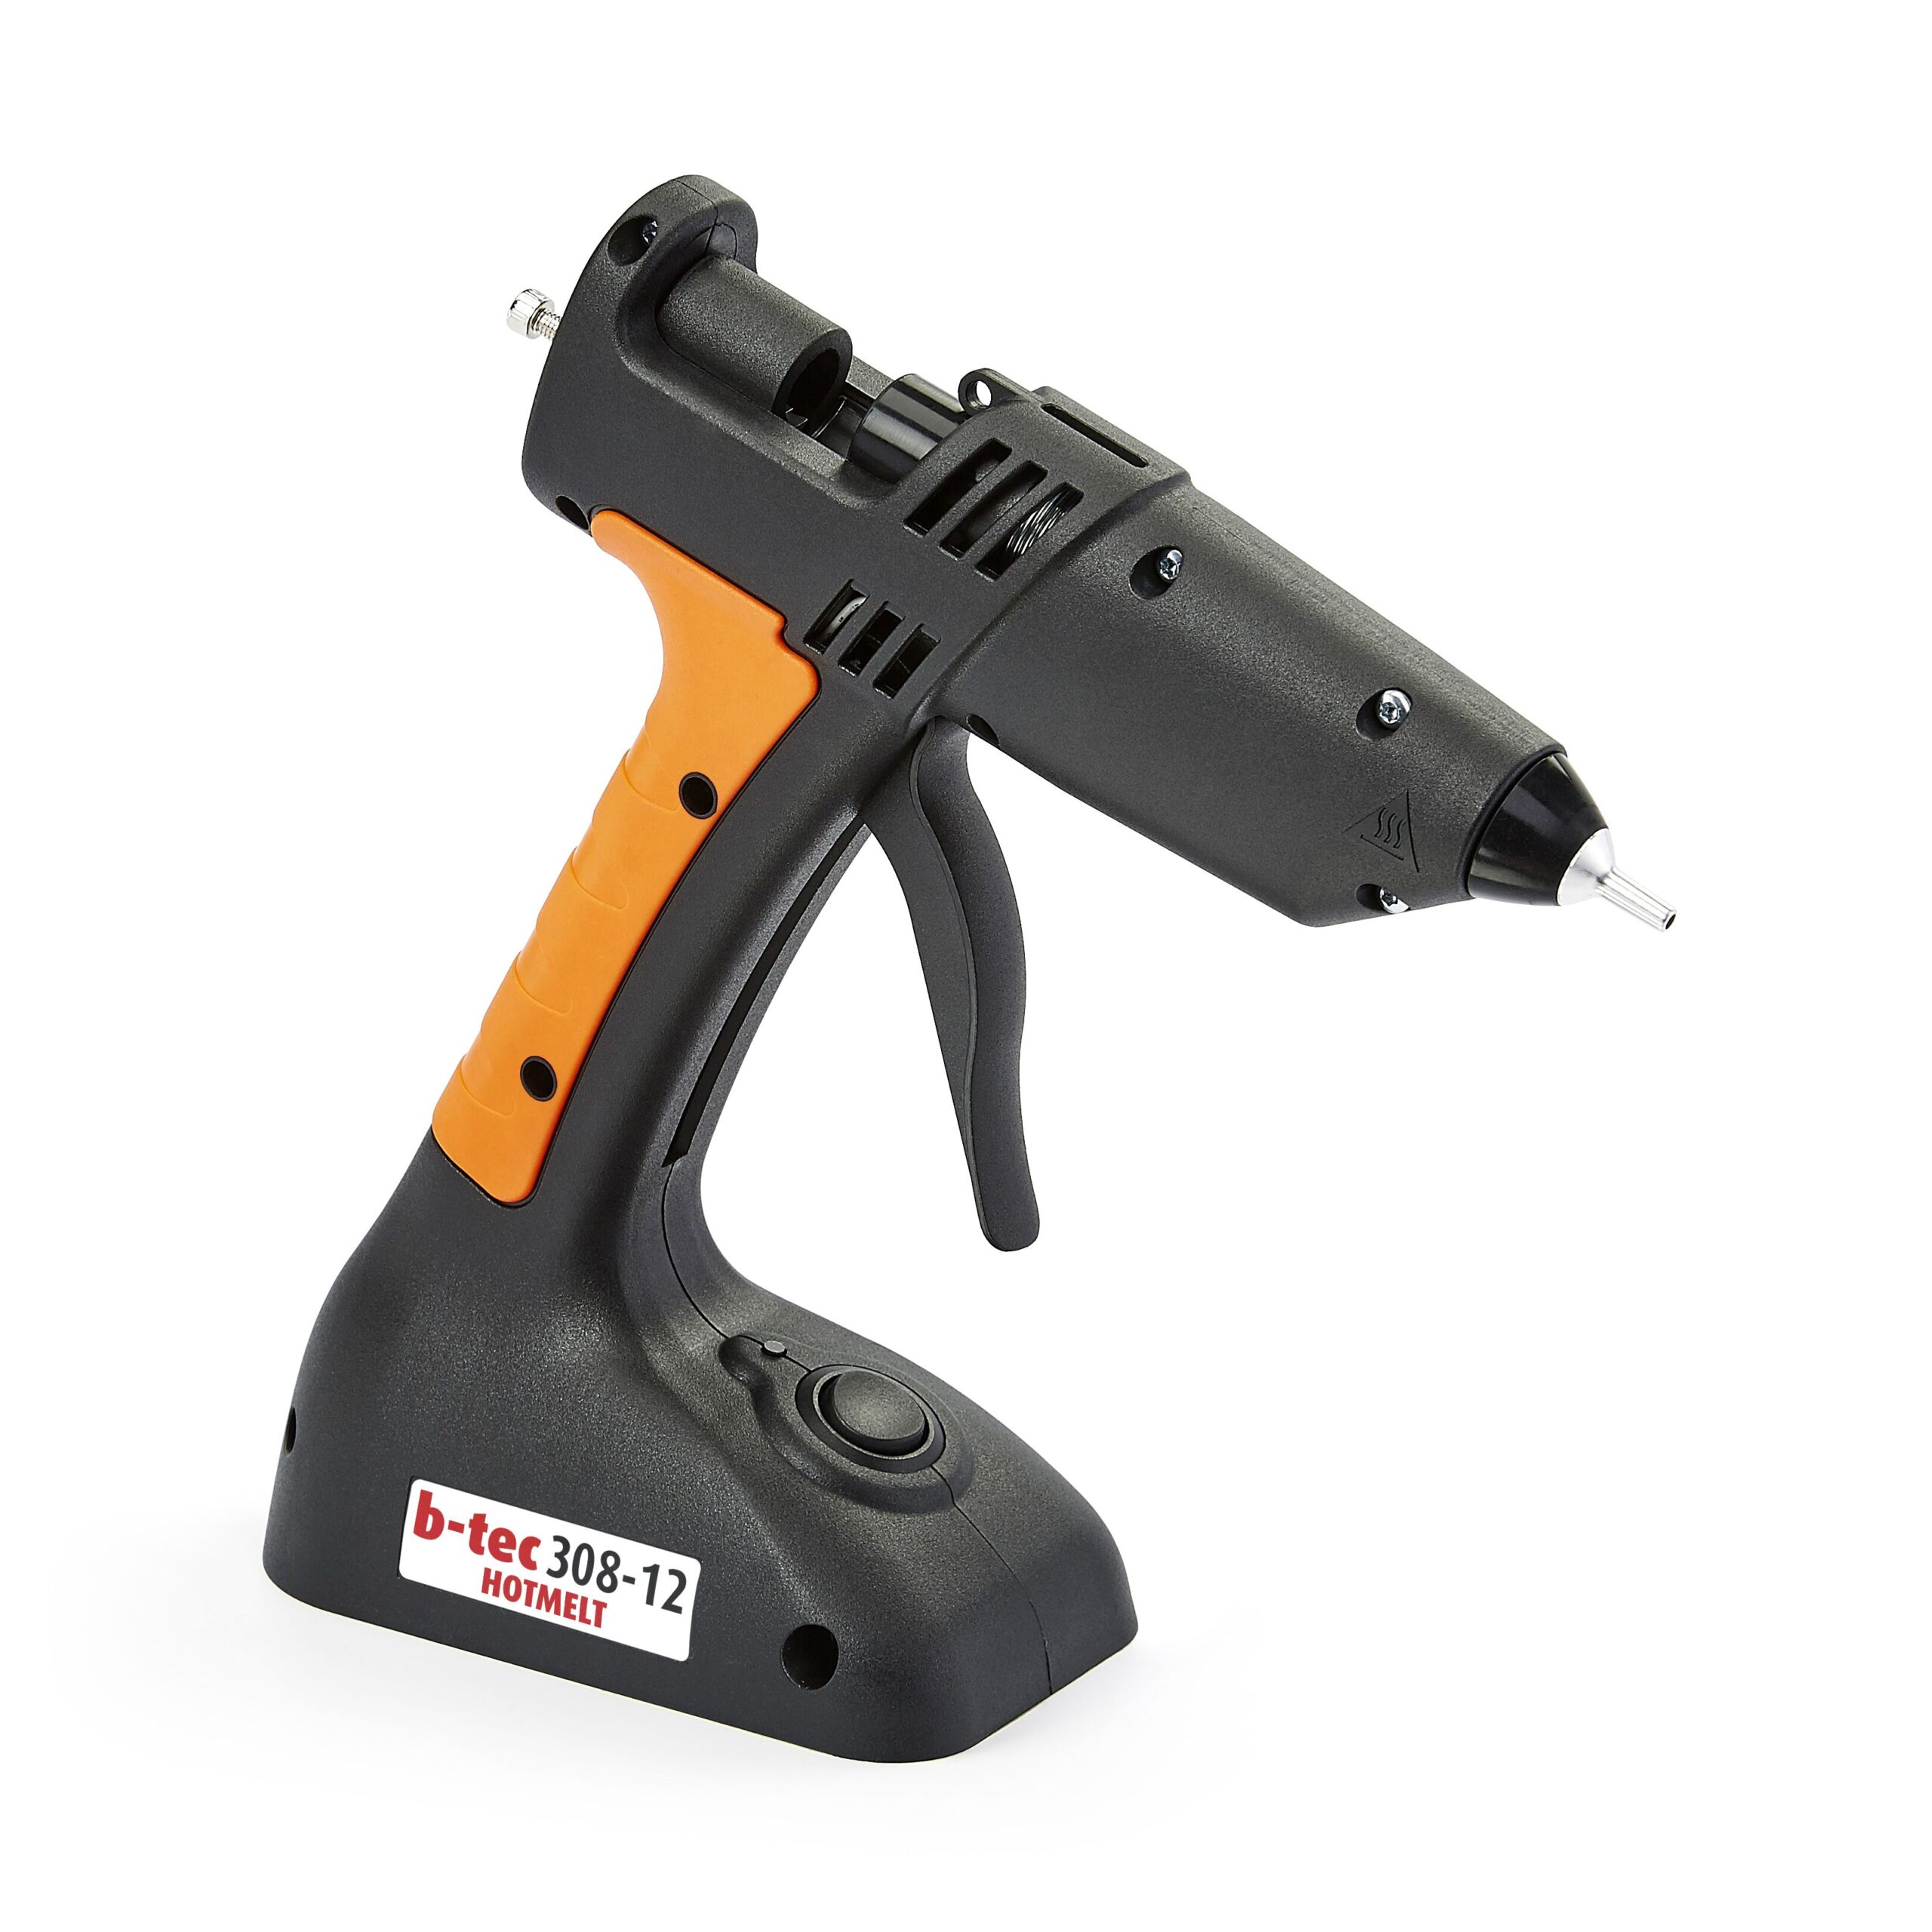 cordless hot melting glue gun For Makita/Milwaukee/Bosch For